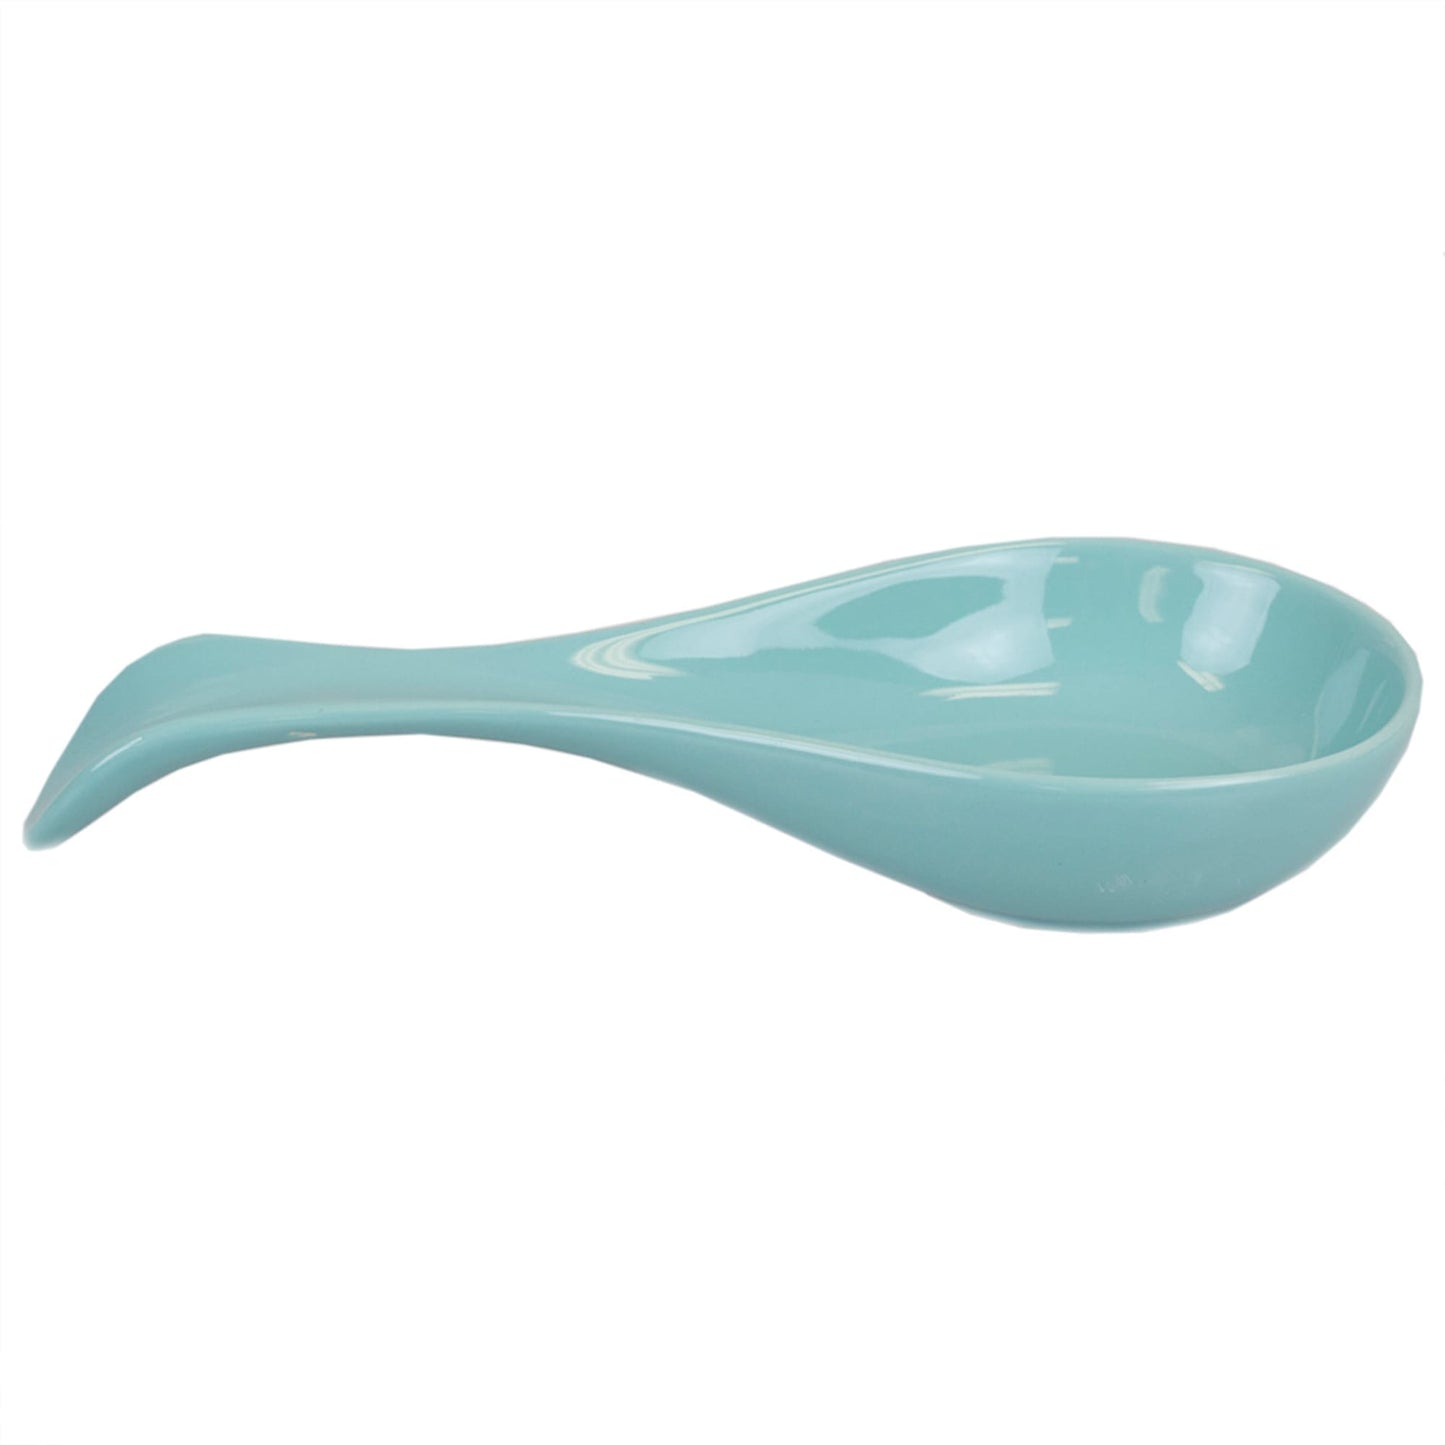 Ceramic Spoon Rest, Turquoise